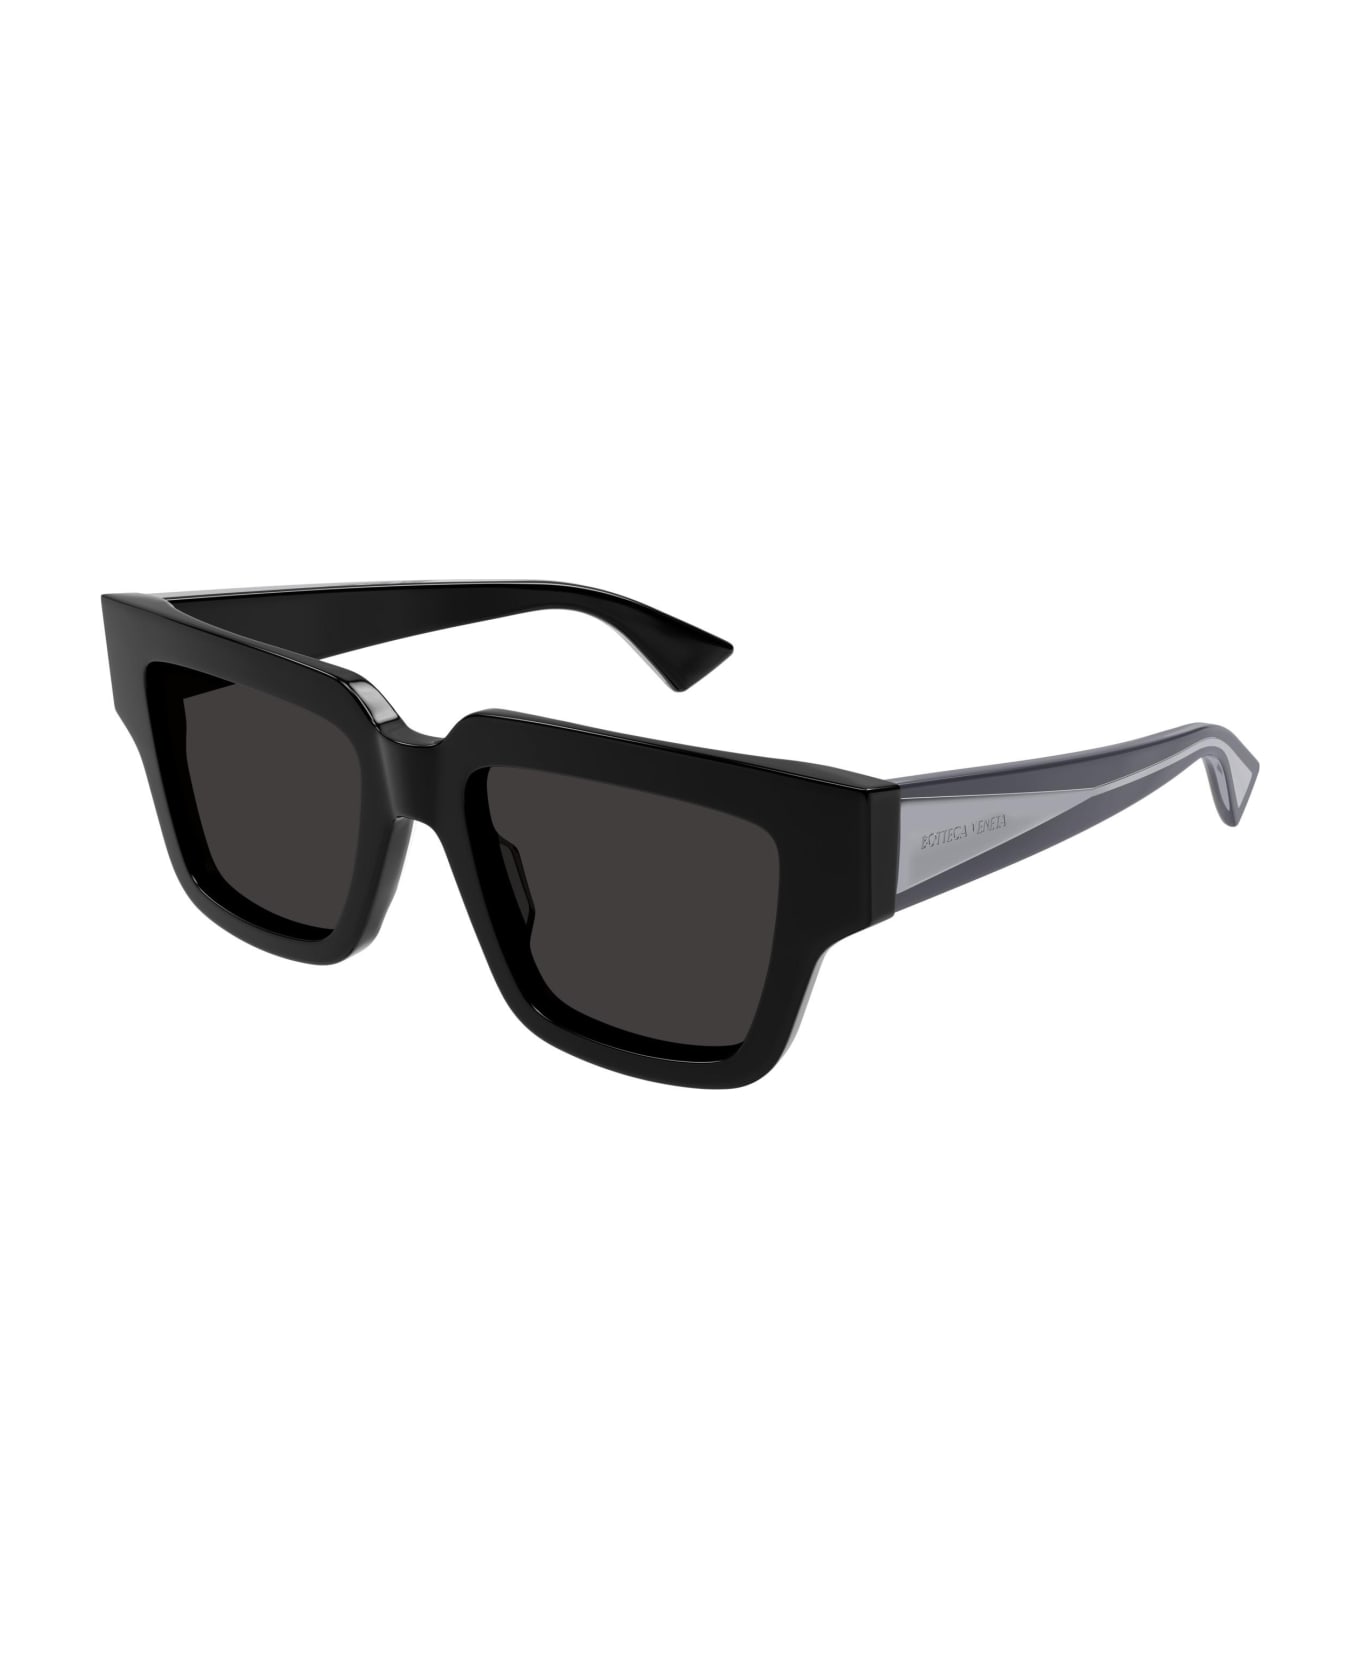 Bottega Veneta Eyewear Sunglasses - Nero/Grigio